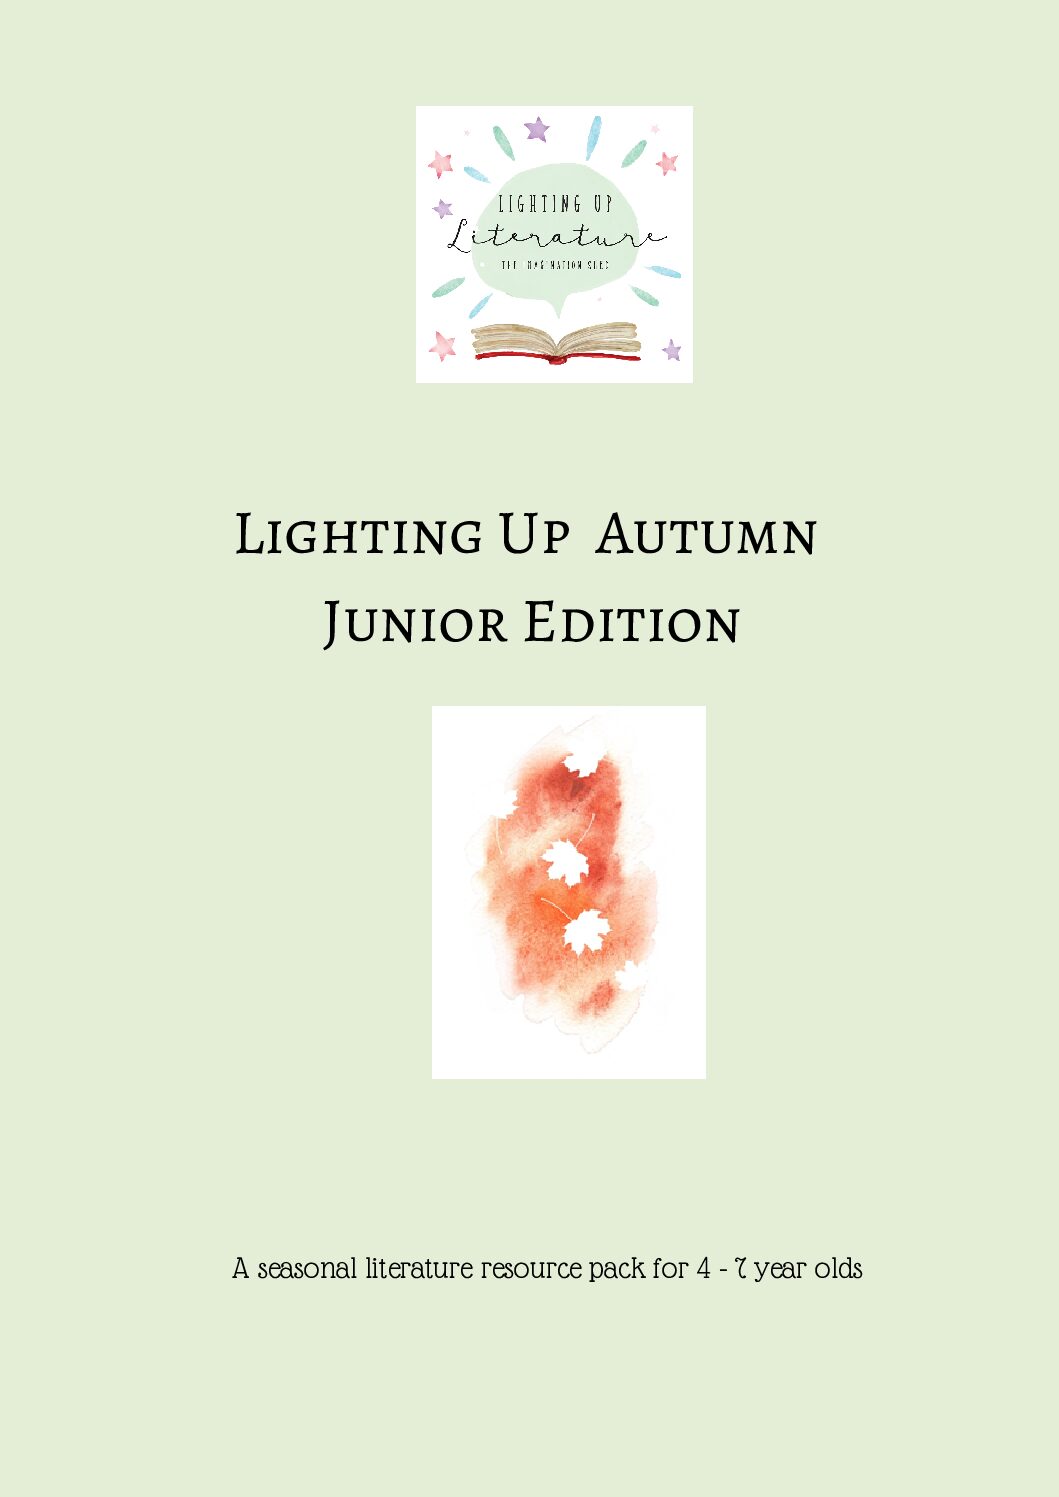 Lighting Up Autumn Junior (Ages 4-7)